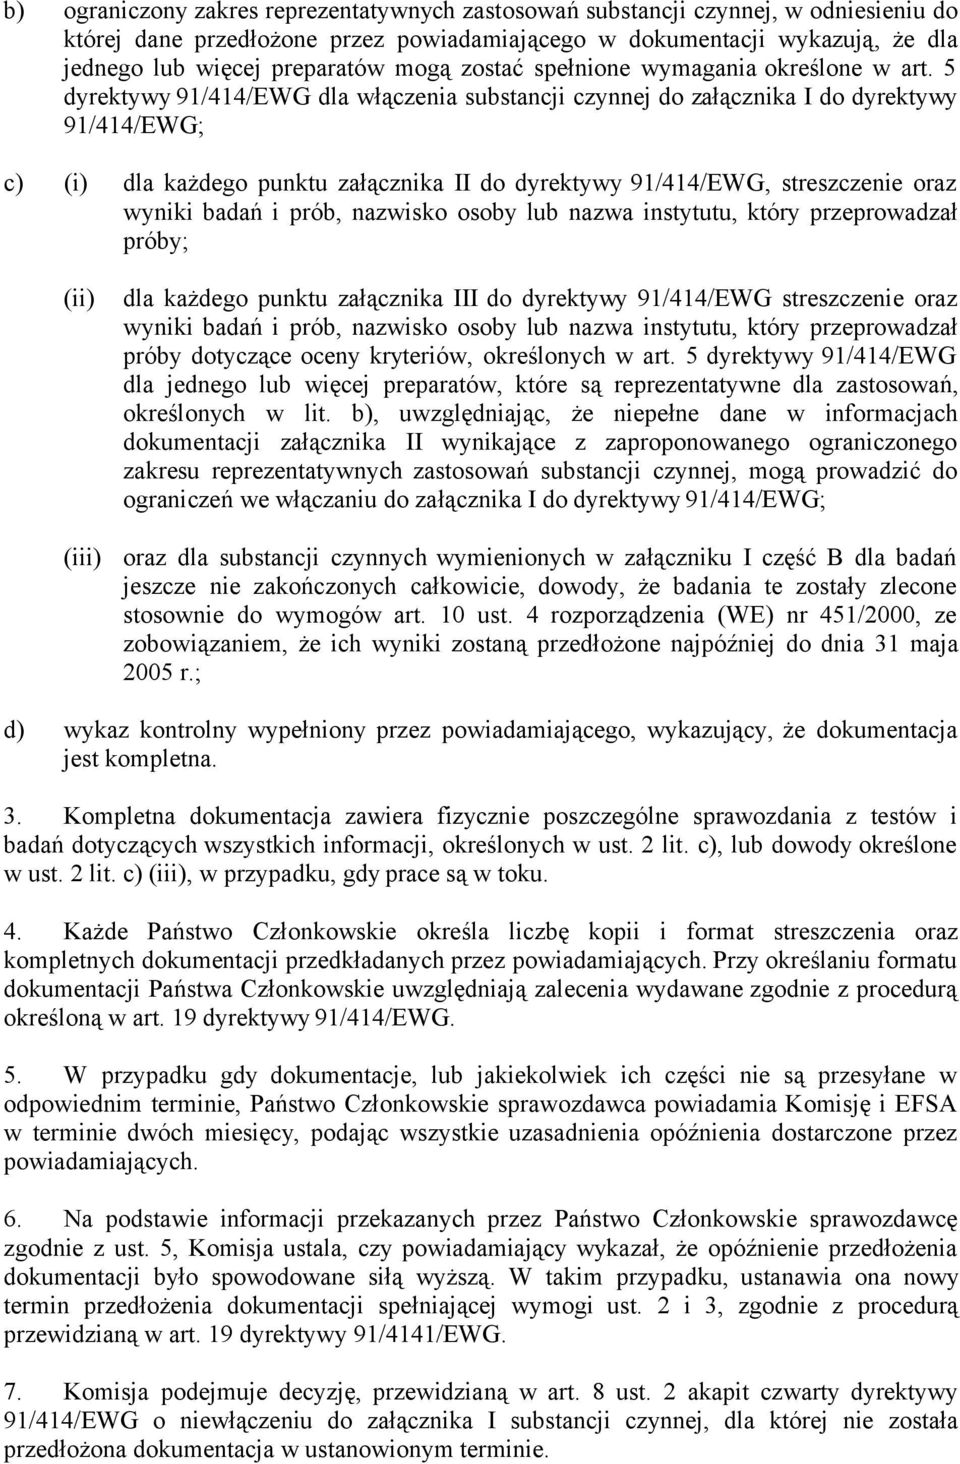 5 dyrektywy 91/414/EWG dla włączenia substancji czynnej do załącznika I do dyrektywy 91/414/EWG; c) (i) dla każdego punktu załącznika II do dyrektywy 91/414/EWG, streszczenie oraz wyniki badań i